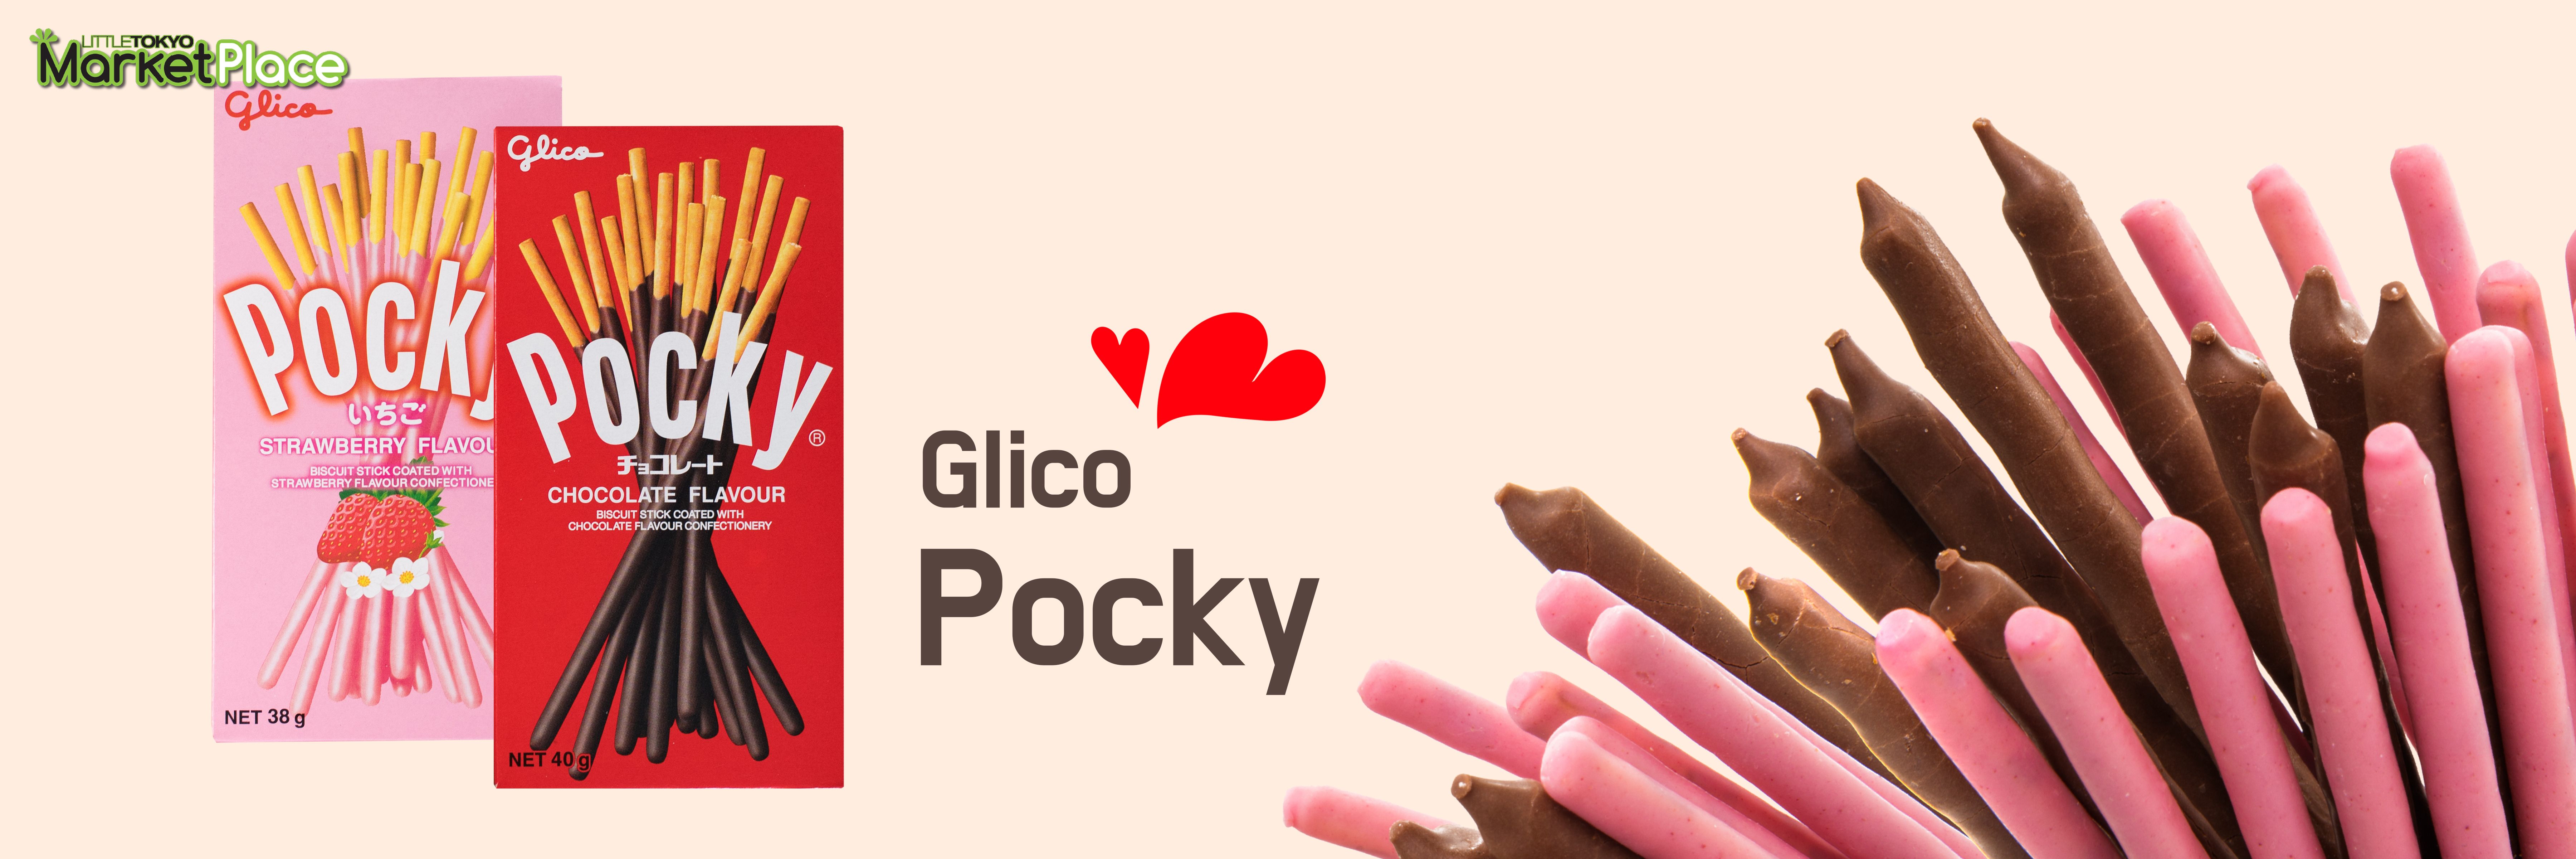 Glico Pocky r1.jpg